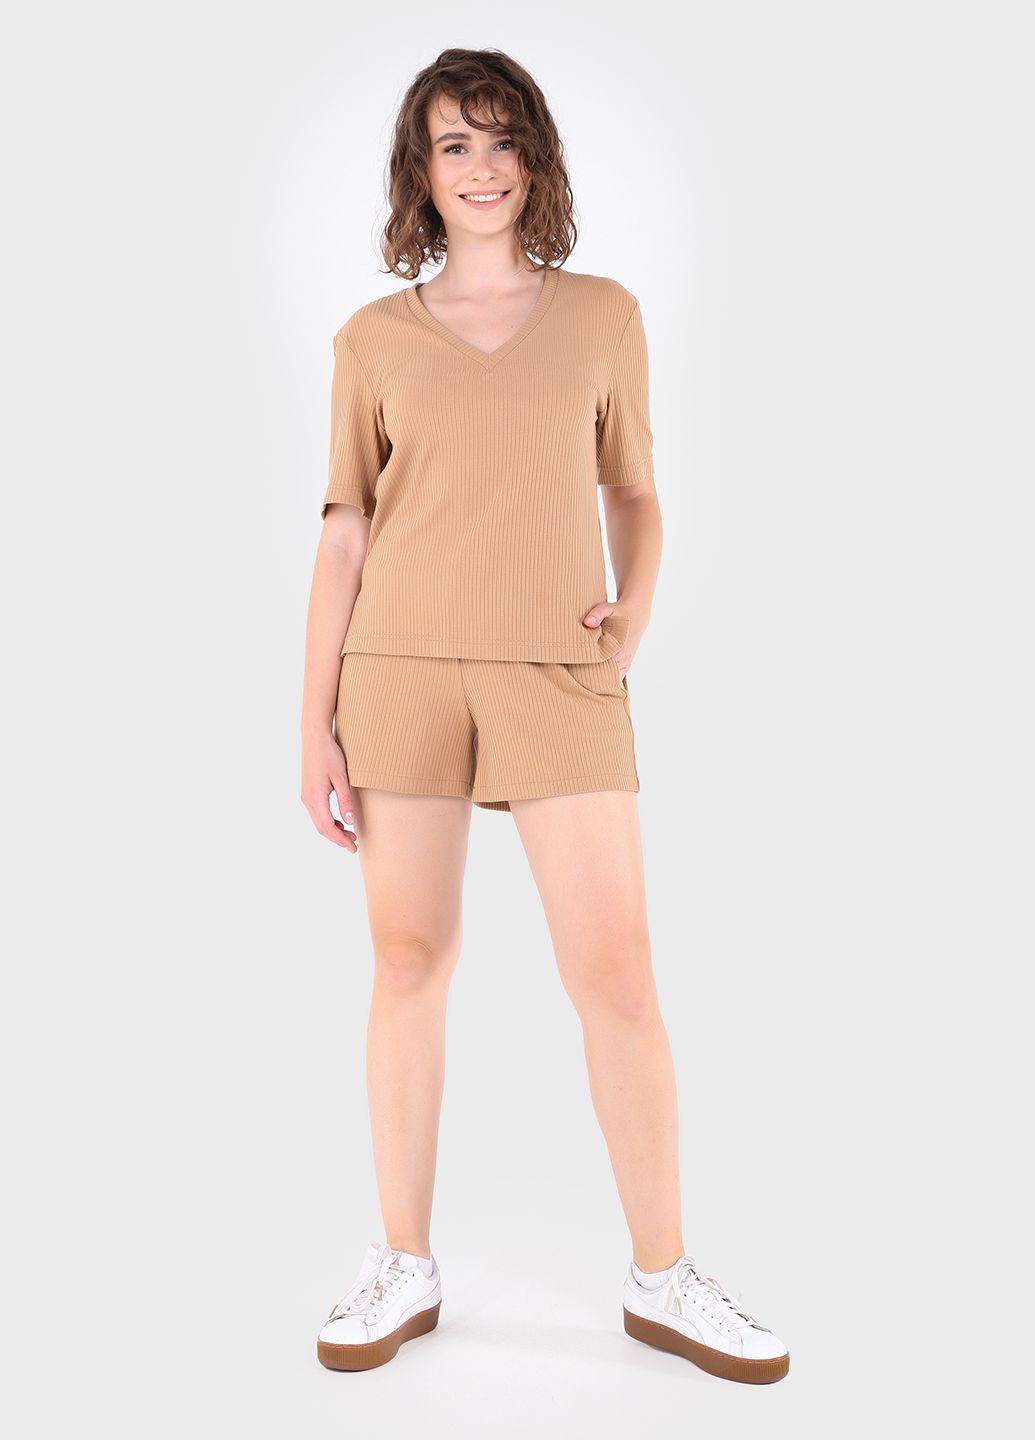 Купить Легкая футболка женская в рубчик Merlini Корунья 800000028 - Песочный, 42-44 в интернет-магазине